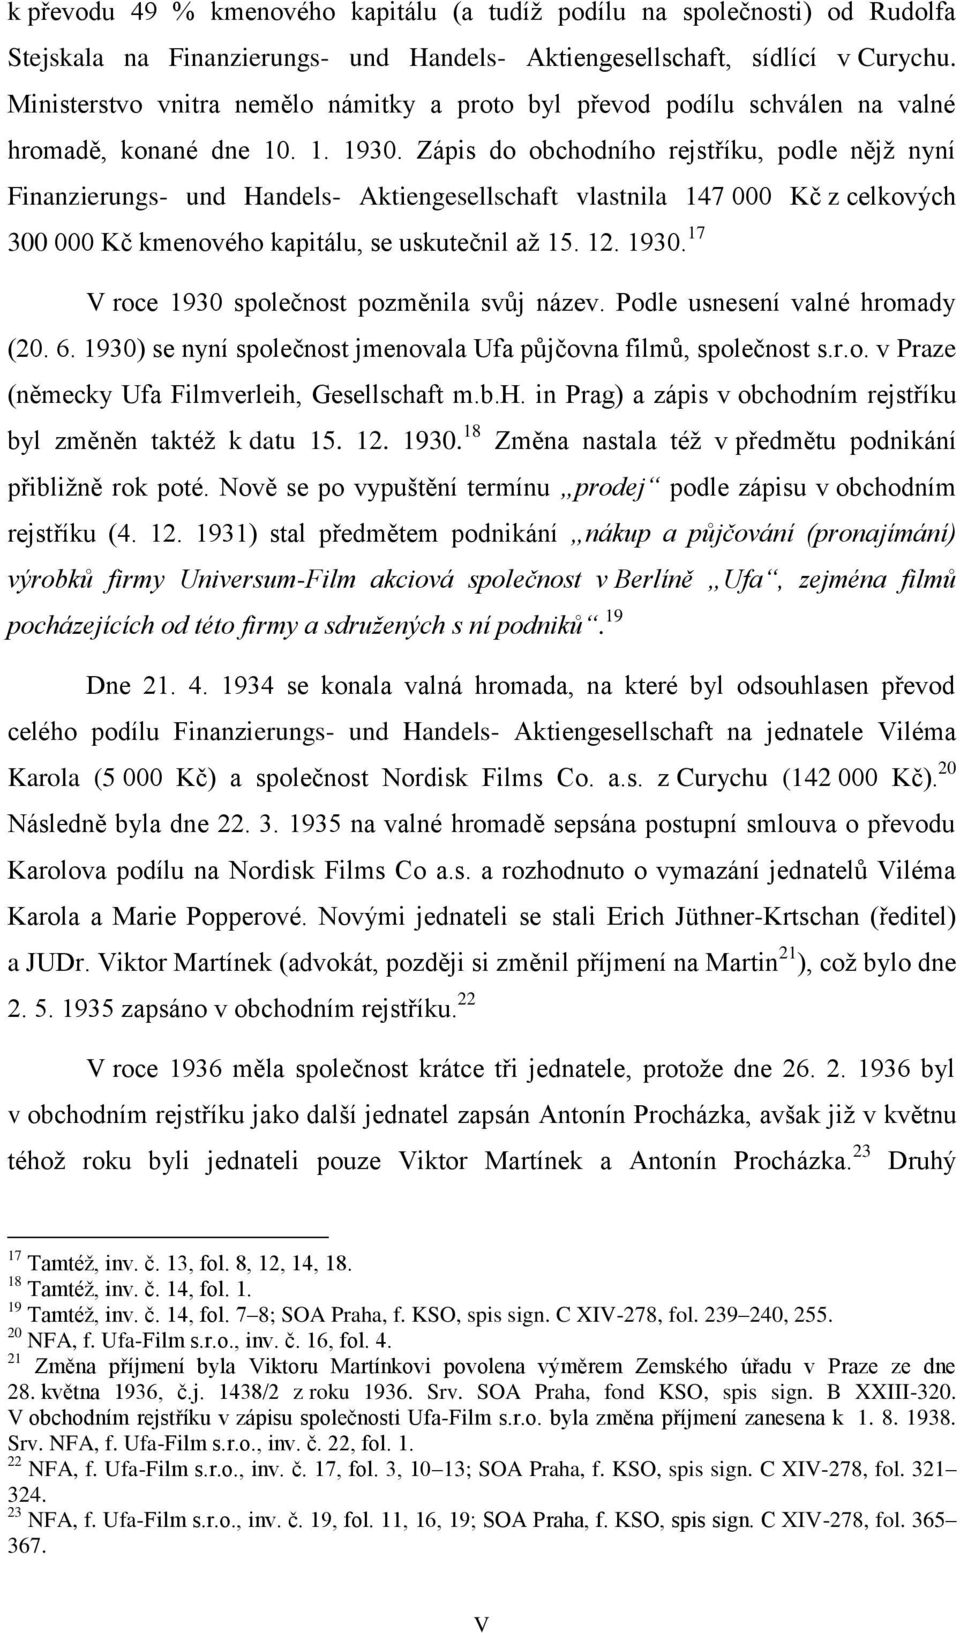 Zápis do obchodního rejstříku, podle nějž nyní Finanzierungs- und Handels- Aktiengesellschaft vlastnila 147 000 Kč z celkových 300 000 Kč kmenového kapitálu, se uskutečnil až 15. 12. 1930.